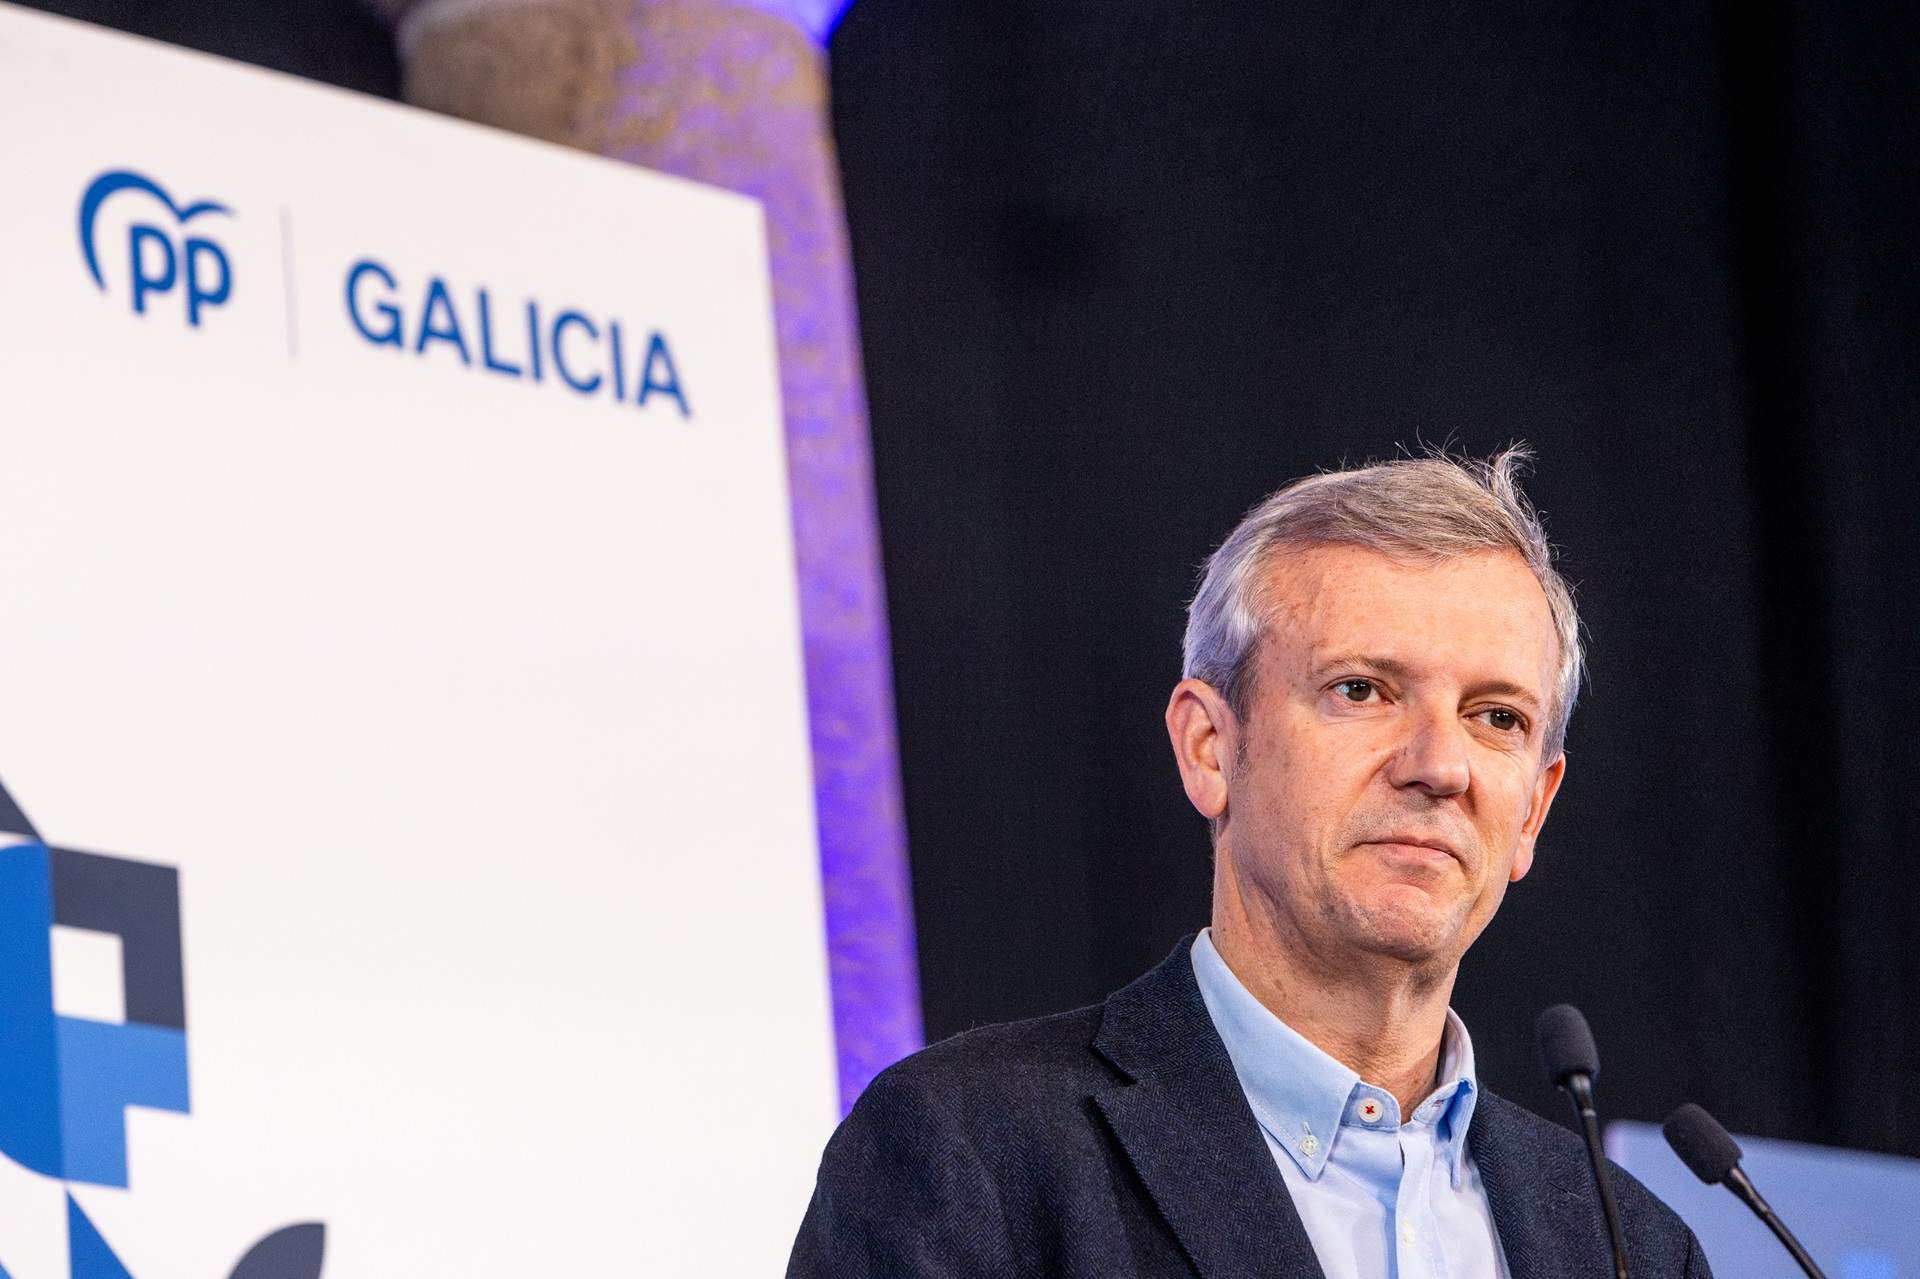 El PP conserva la mayoría absoluta en Galicia ante el auge del BNG, según las encuestas